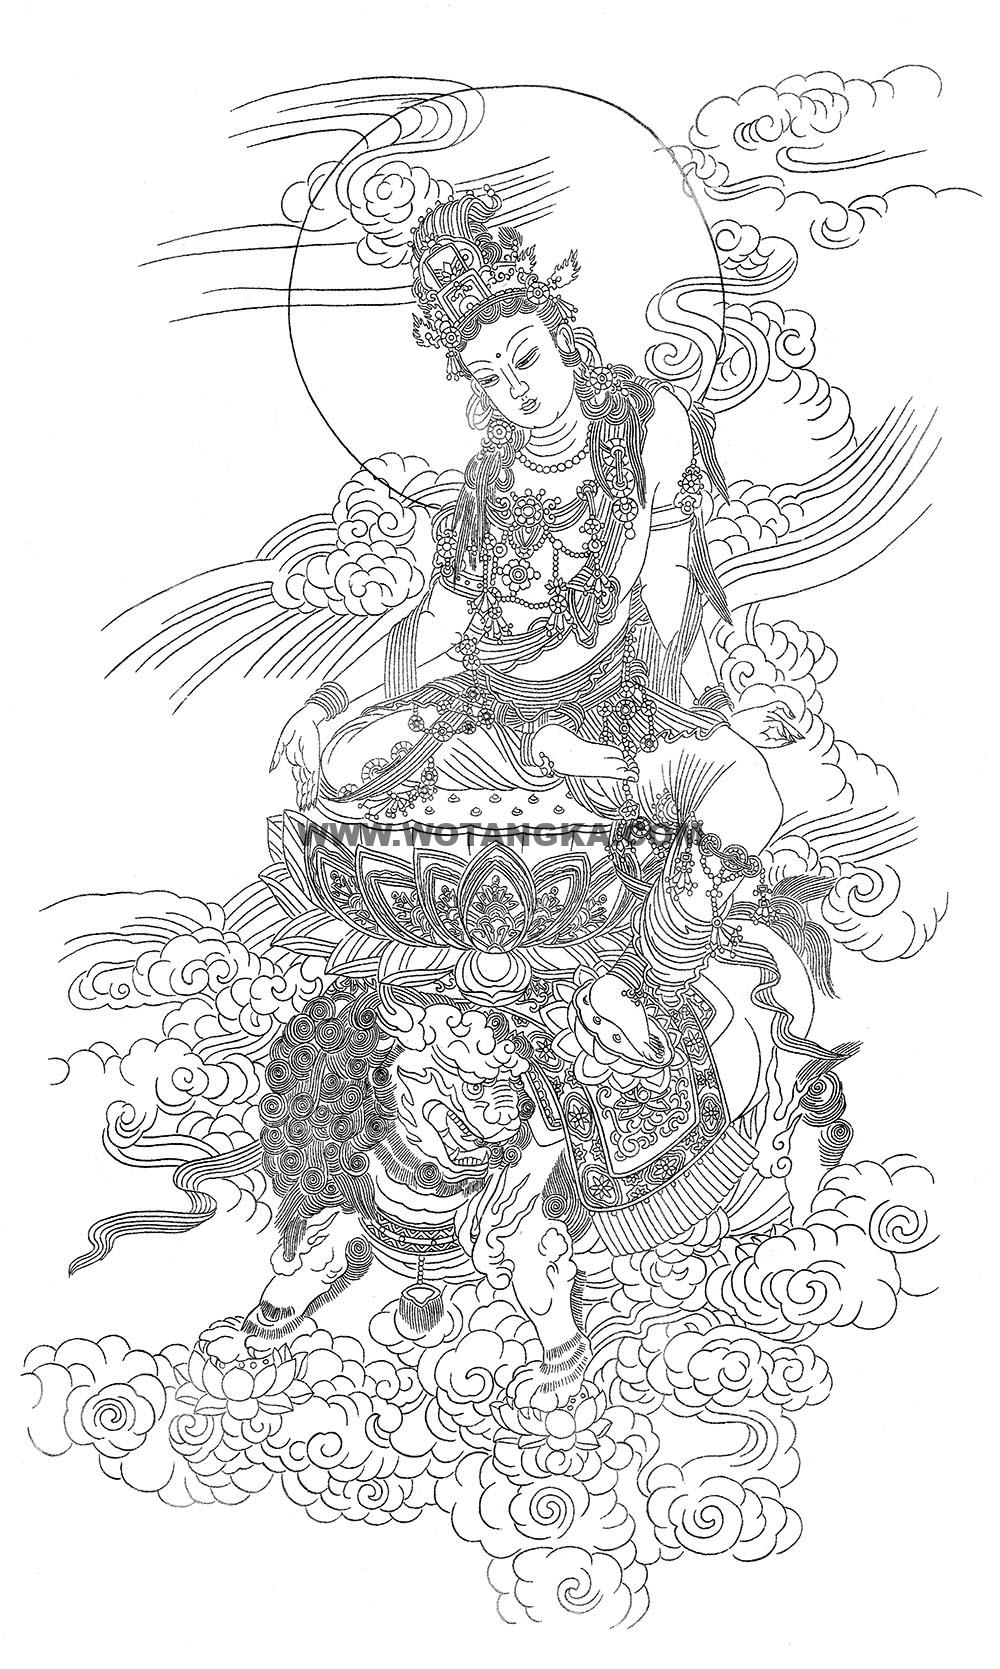 沃唐卡-唐卡白描线稿编号RD40051：骑狮莲花座文殊菩萨| 沃唐卡www 